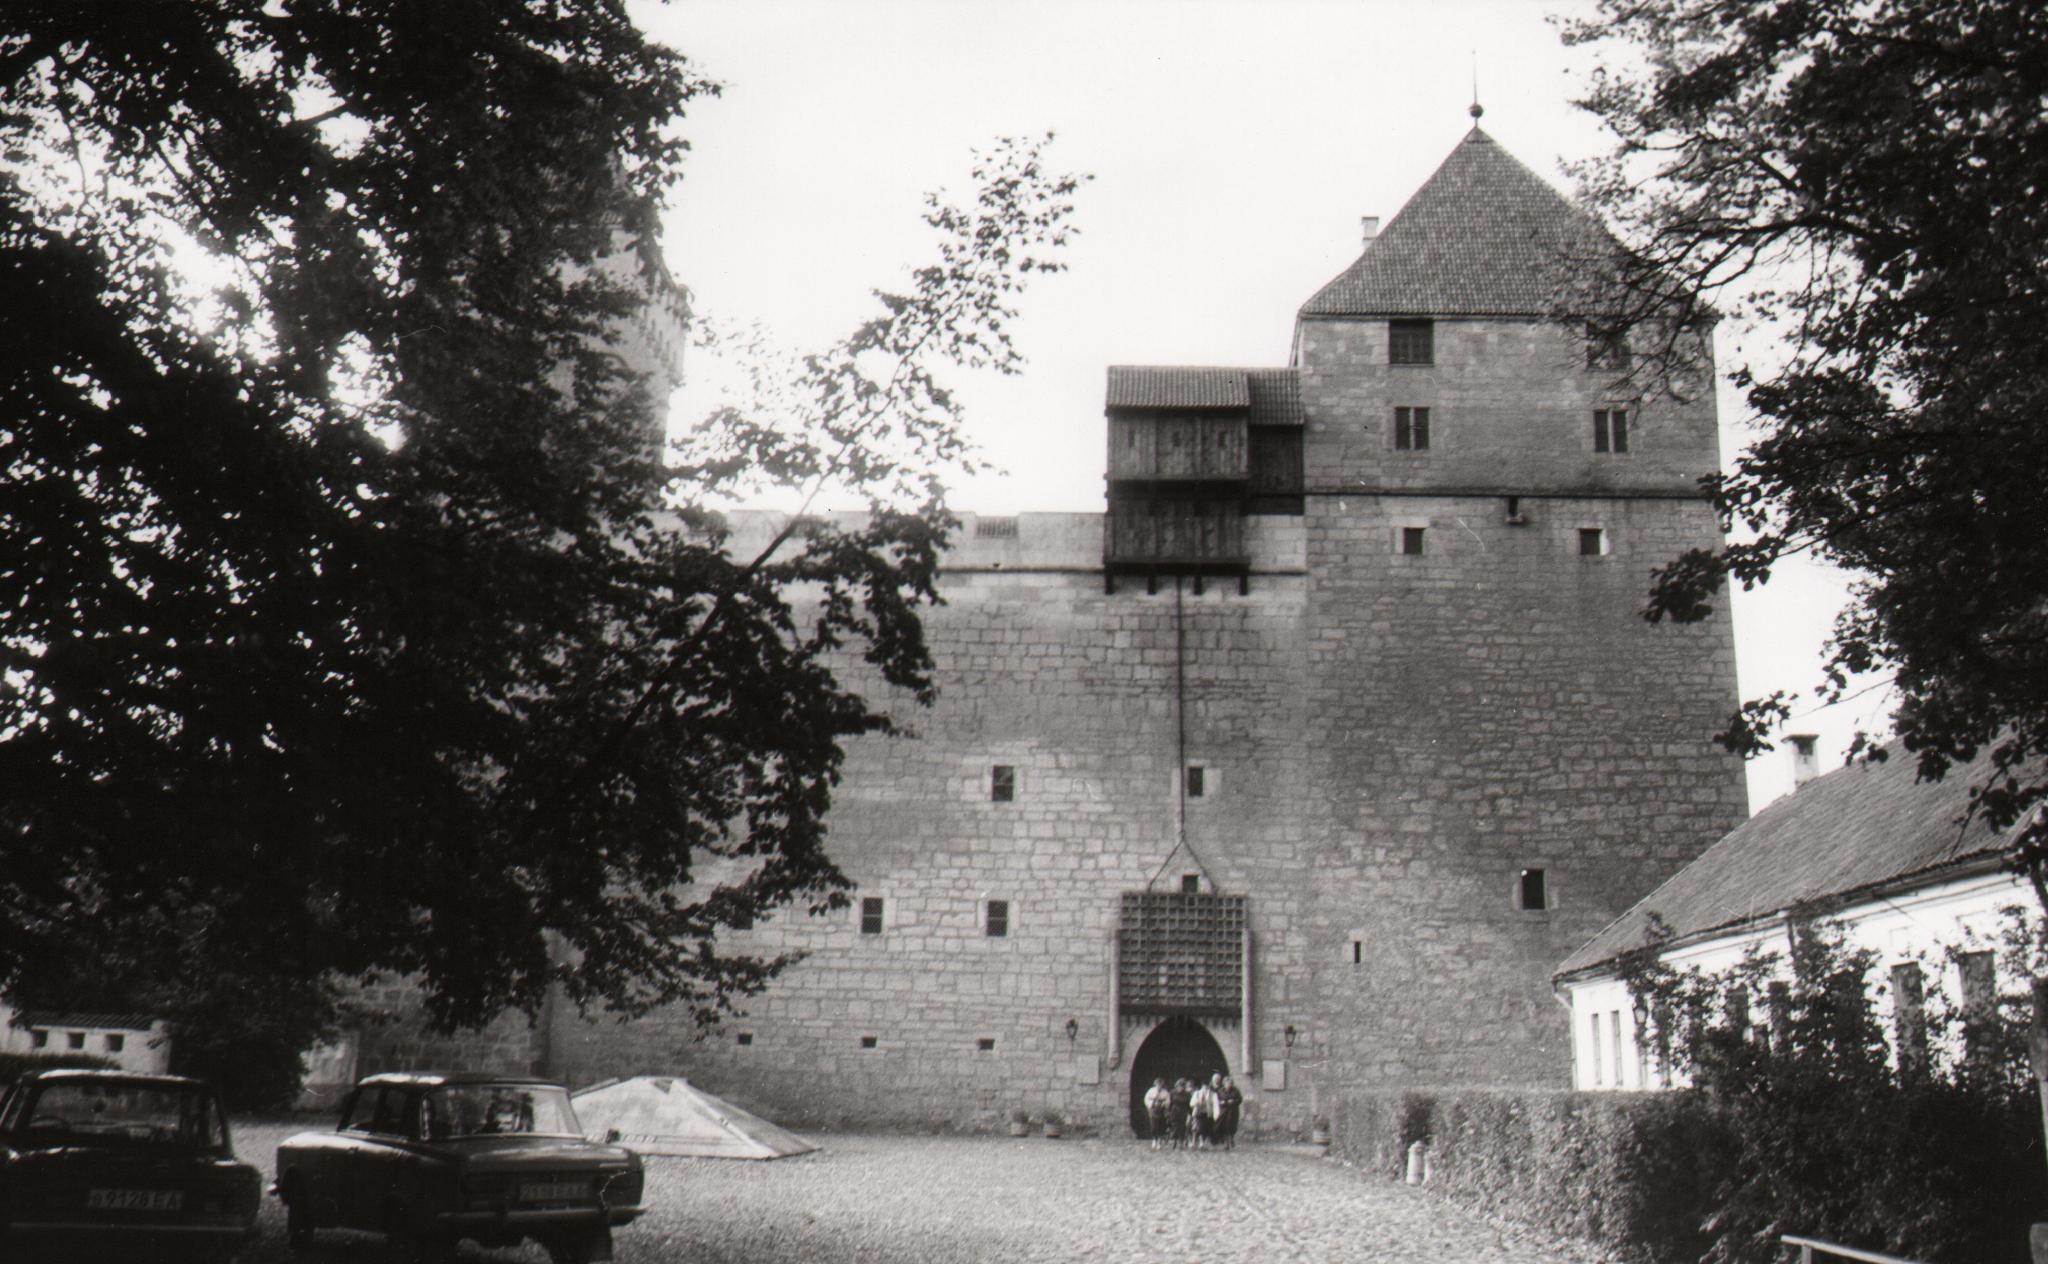 Kuressaare Castle in Saaremaa, 1988